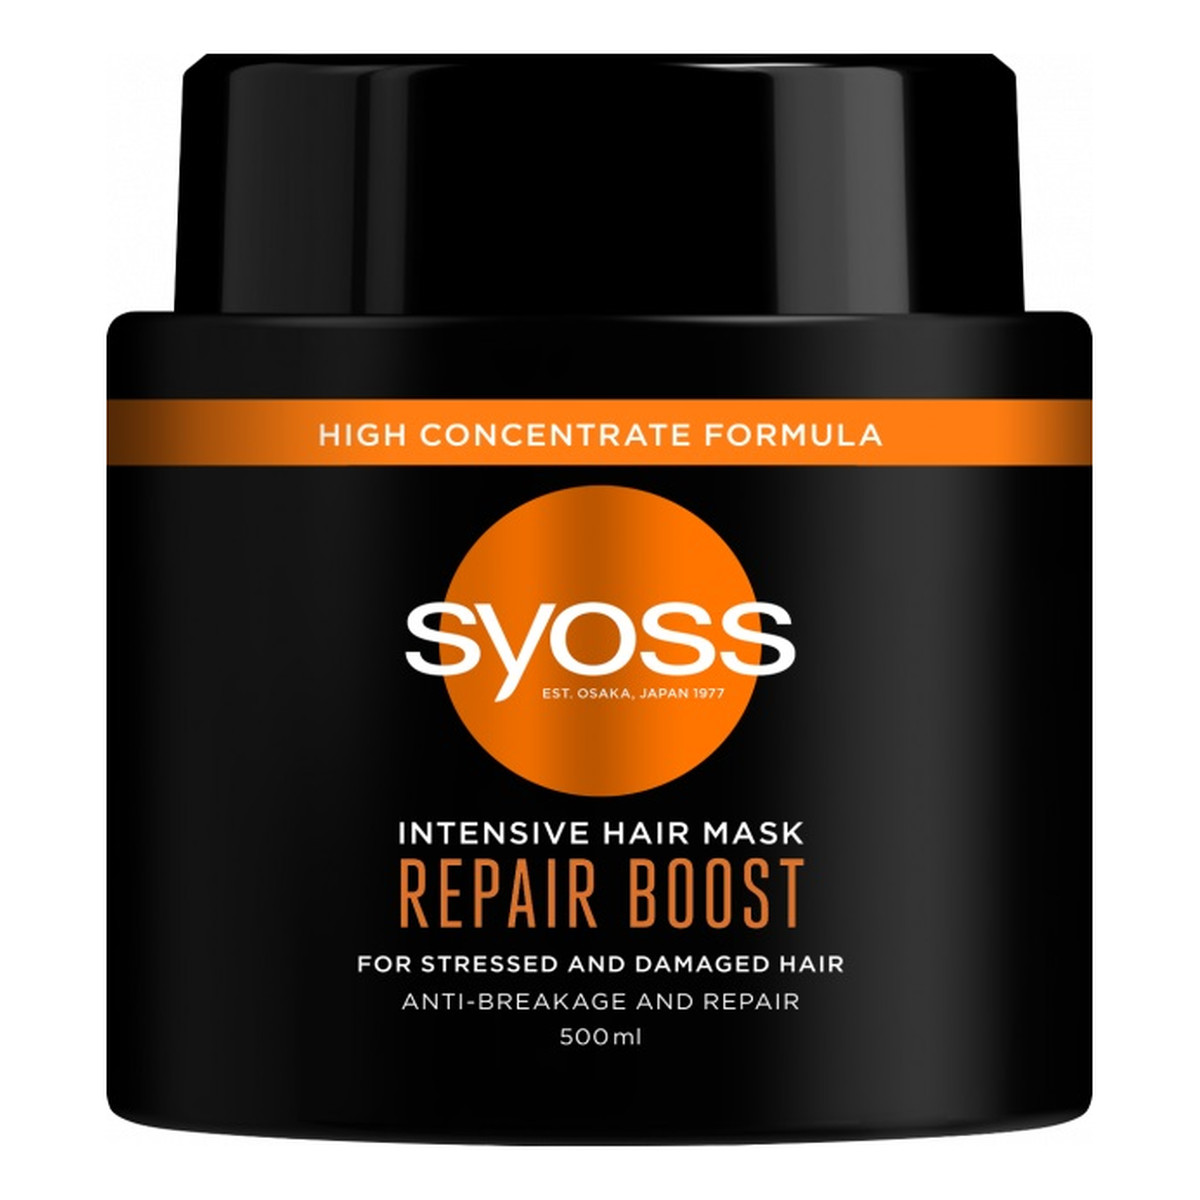 Syoss Intensive hair mask repair boost intensywnie regenerująca maska do włosów suchych i zniszczonych 500ml